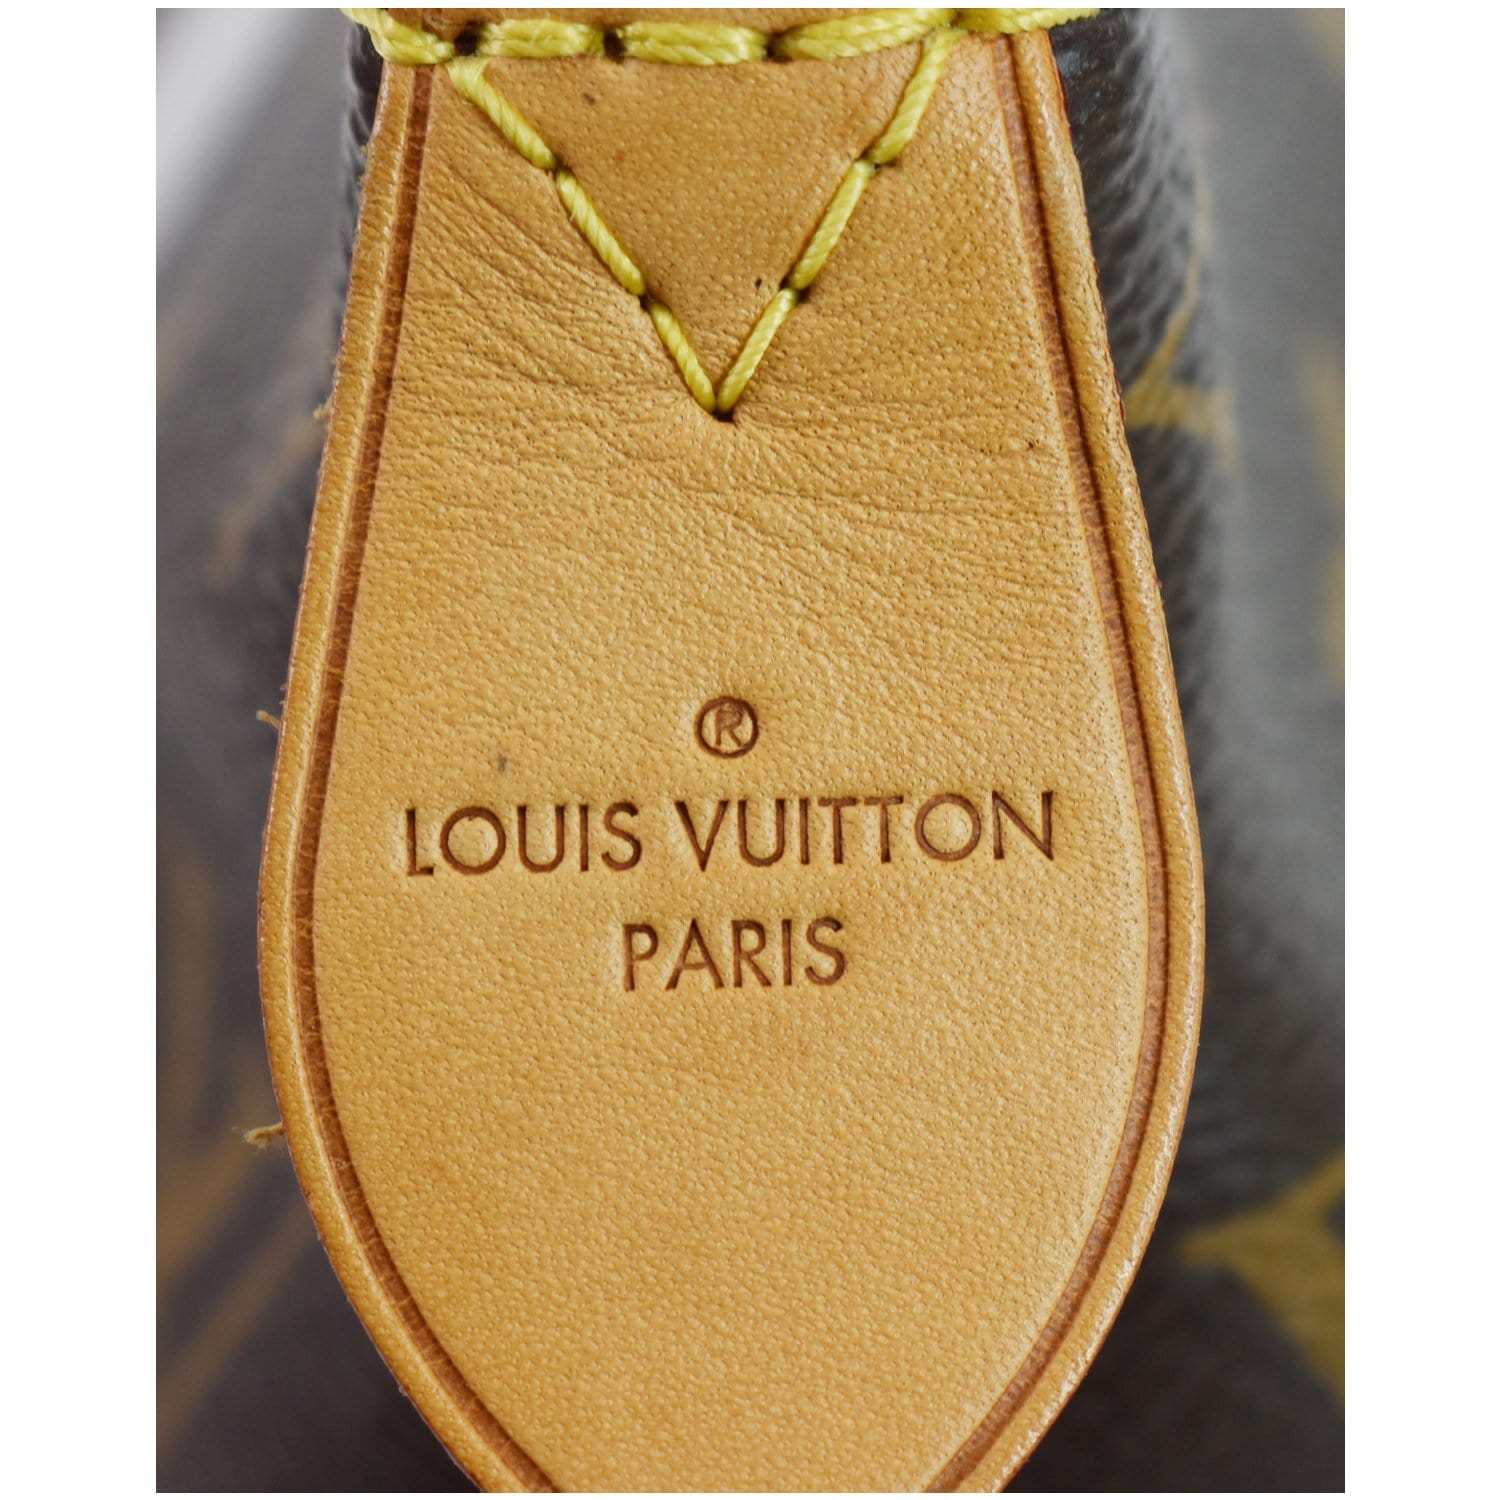 Louis Vuitton Monogram Canvas Iena PM QJBCNP5V0F014